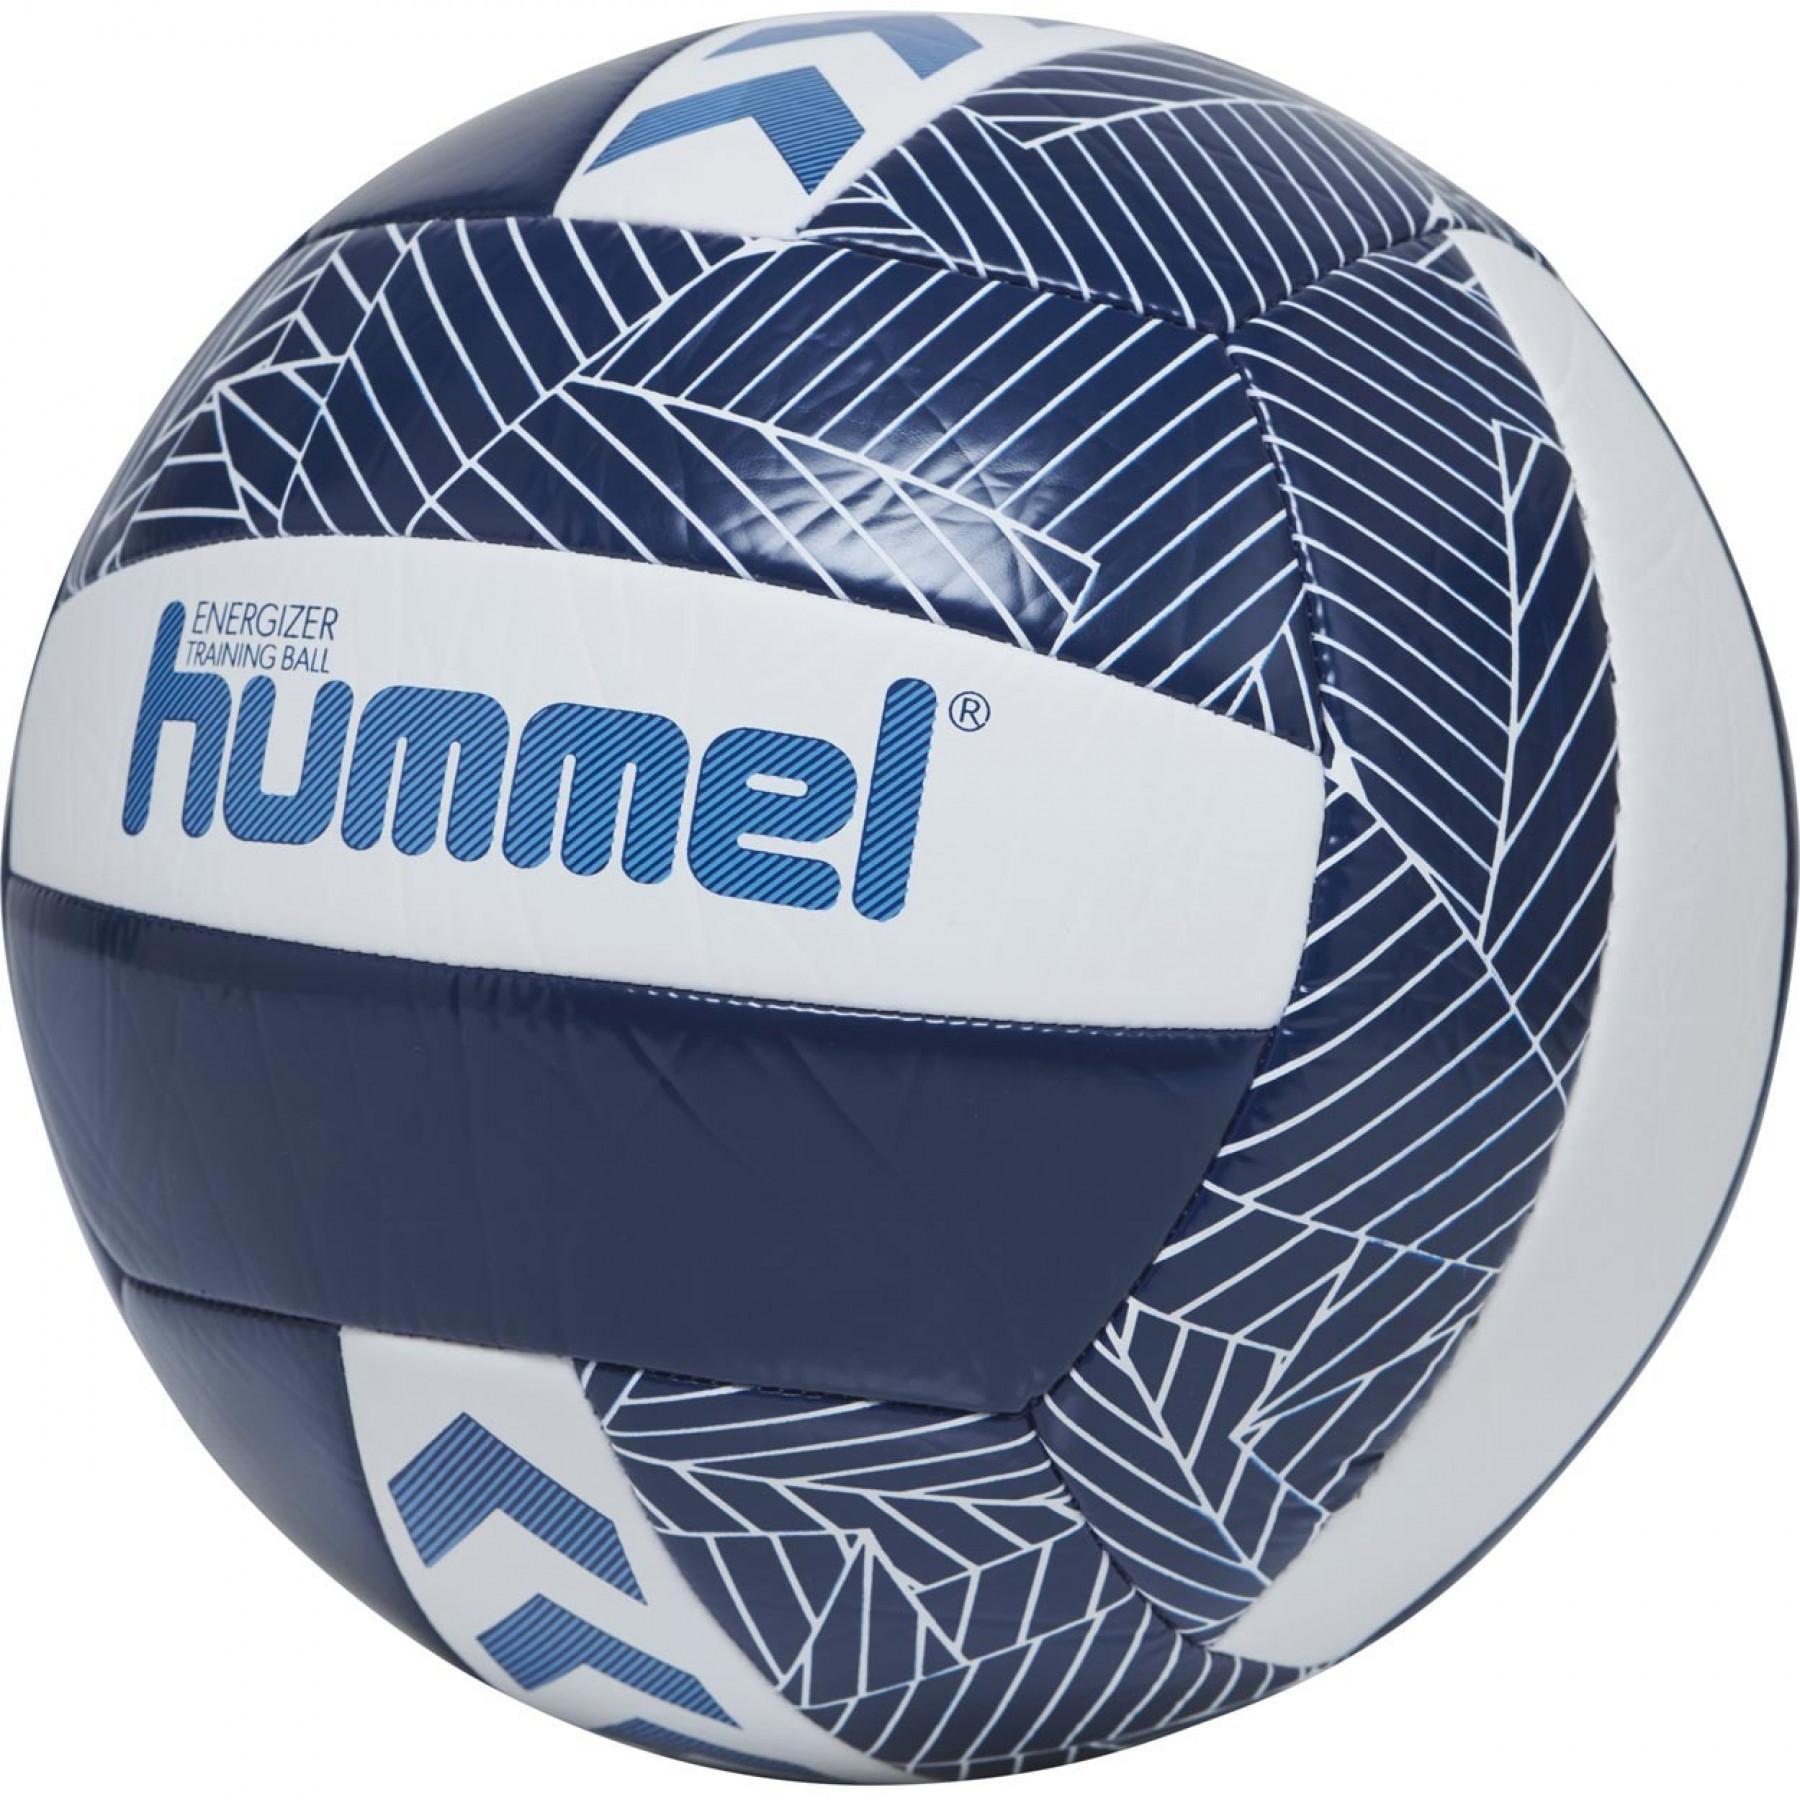 Lot de 5 Ballons Volley-ball Hummel Energizer [Taille  5]